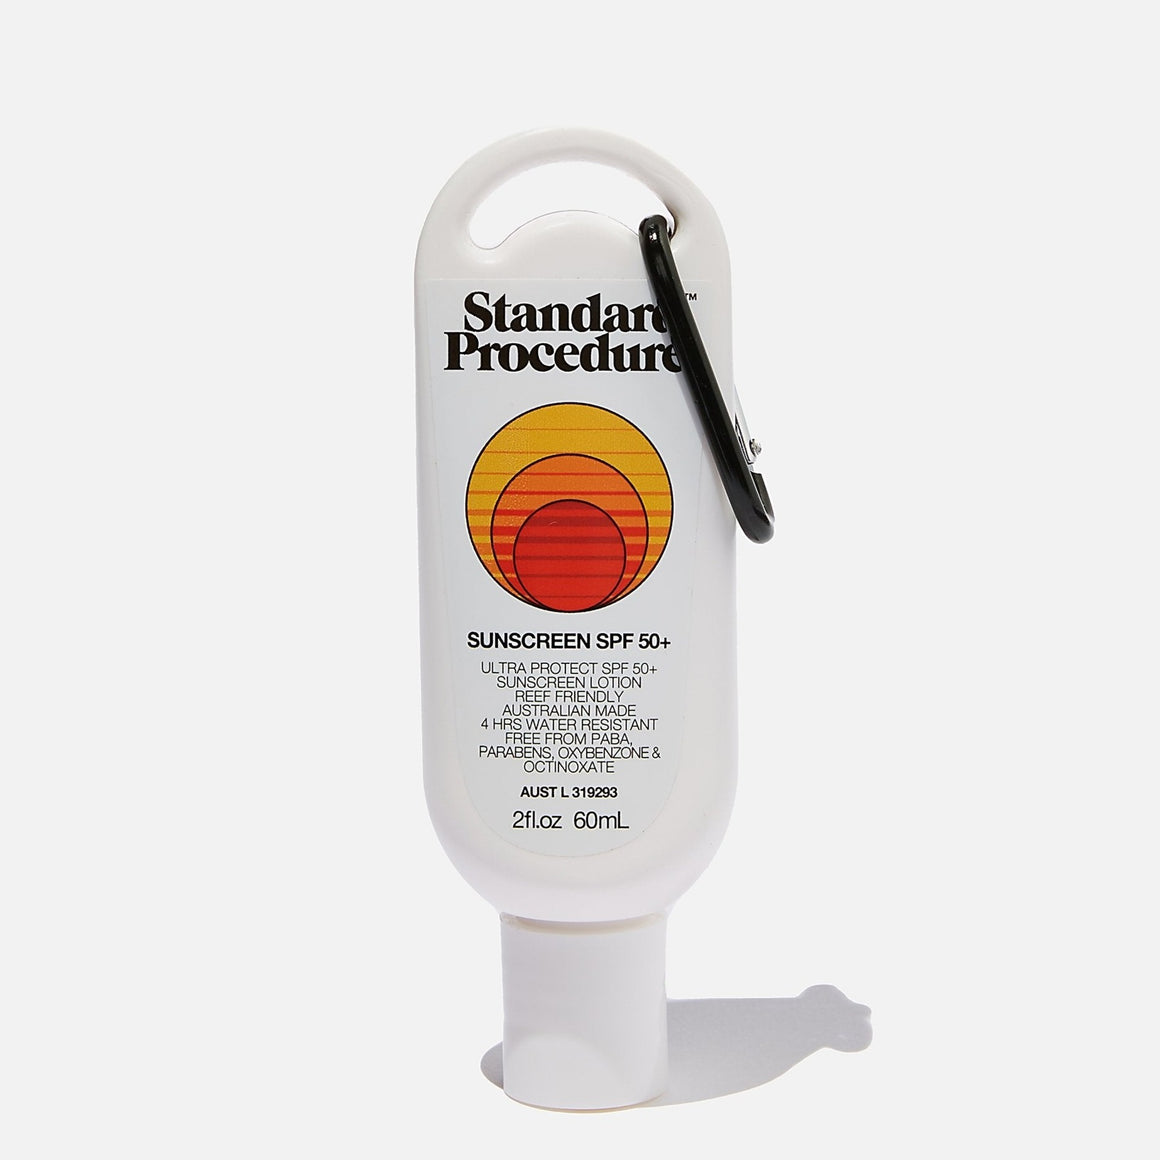 Standard Procedure Sunscreen